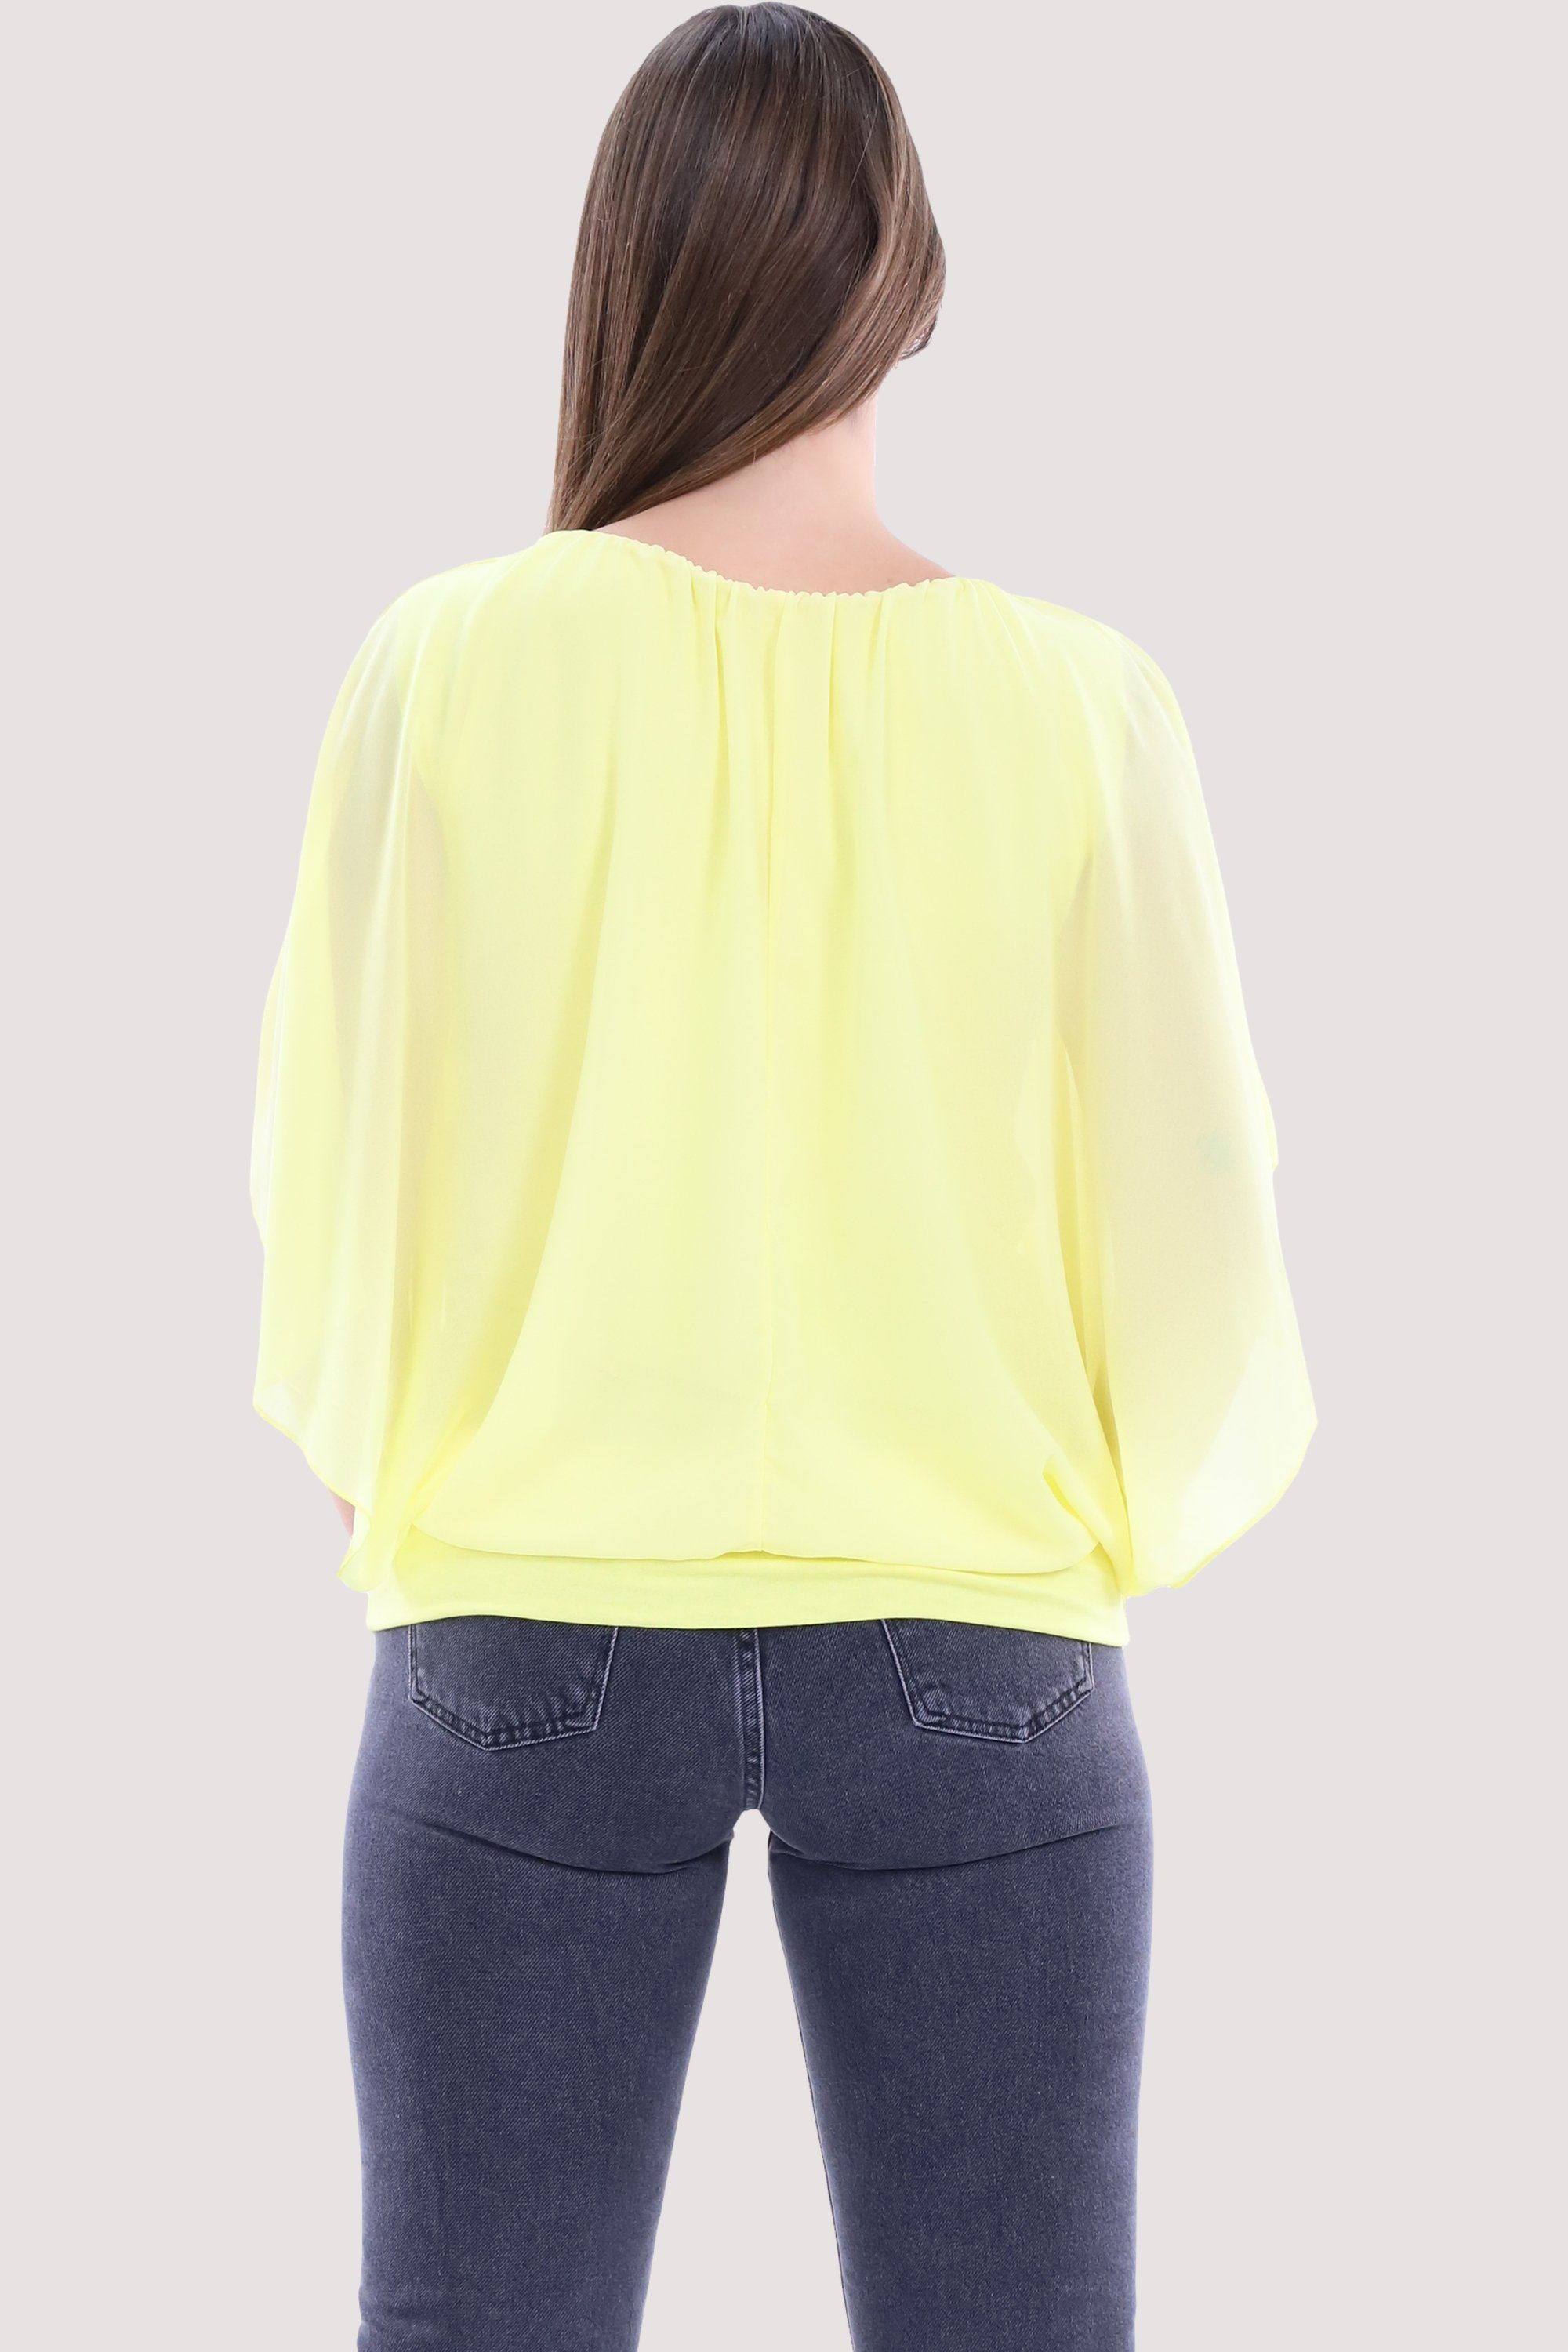 Chiffonbluse more gelb than Bund malito fashion mit 6296 breitem Einheitsgröße